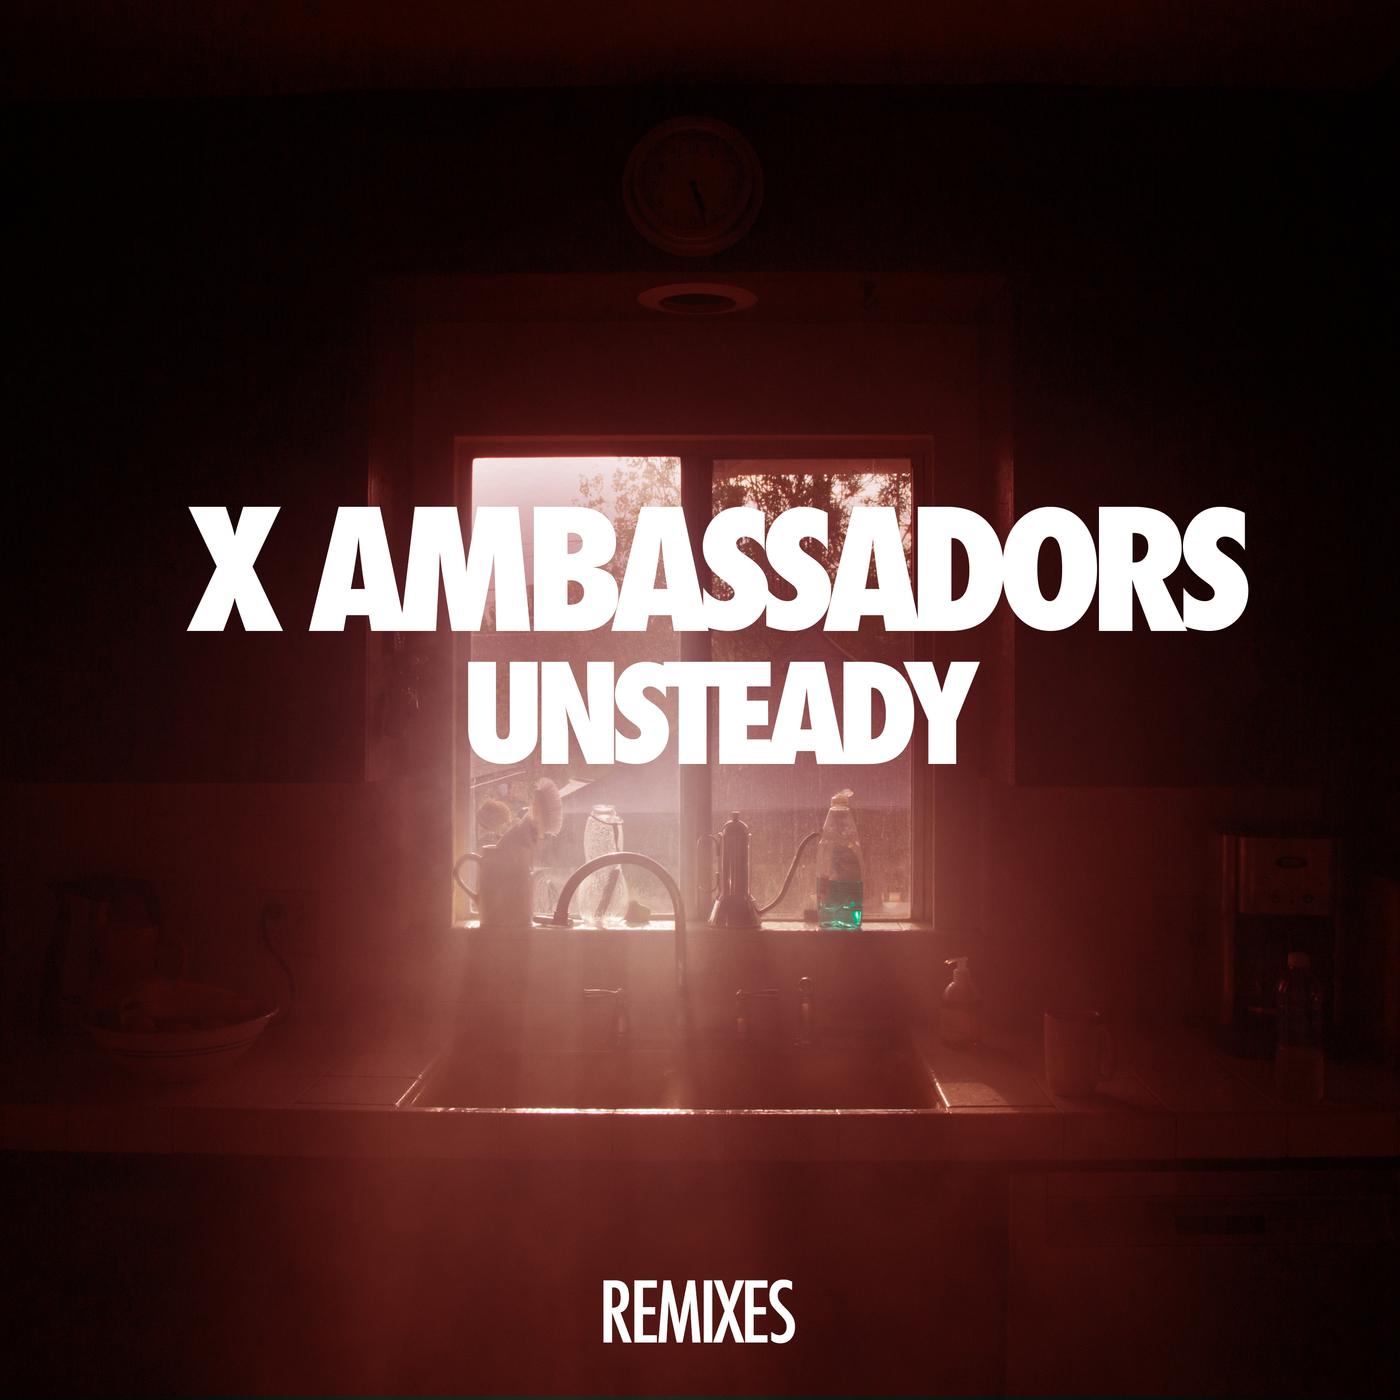 Включи ремикс песня. Unsteady. Unsteady Ambassadors. Unsteady x Ambassadors. Альбом x Ambassadors.